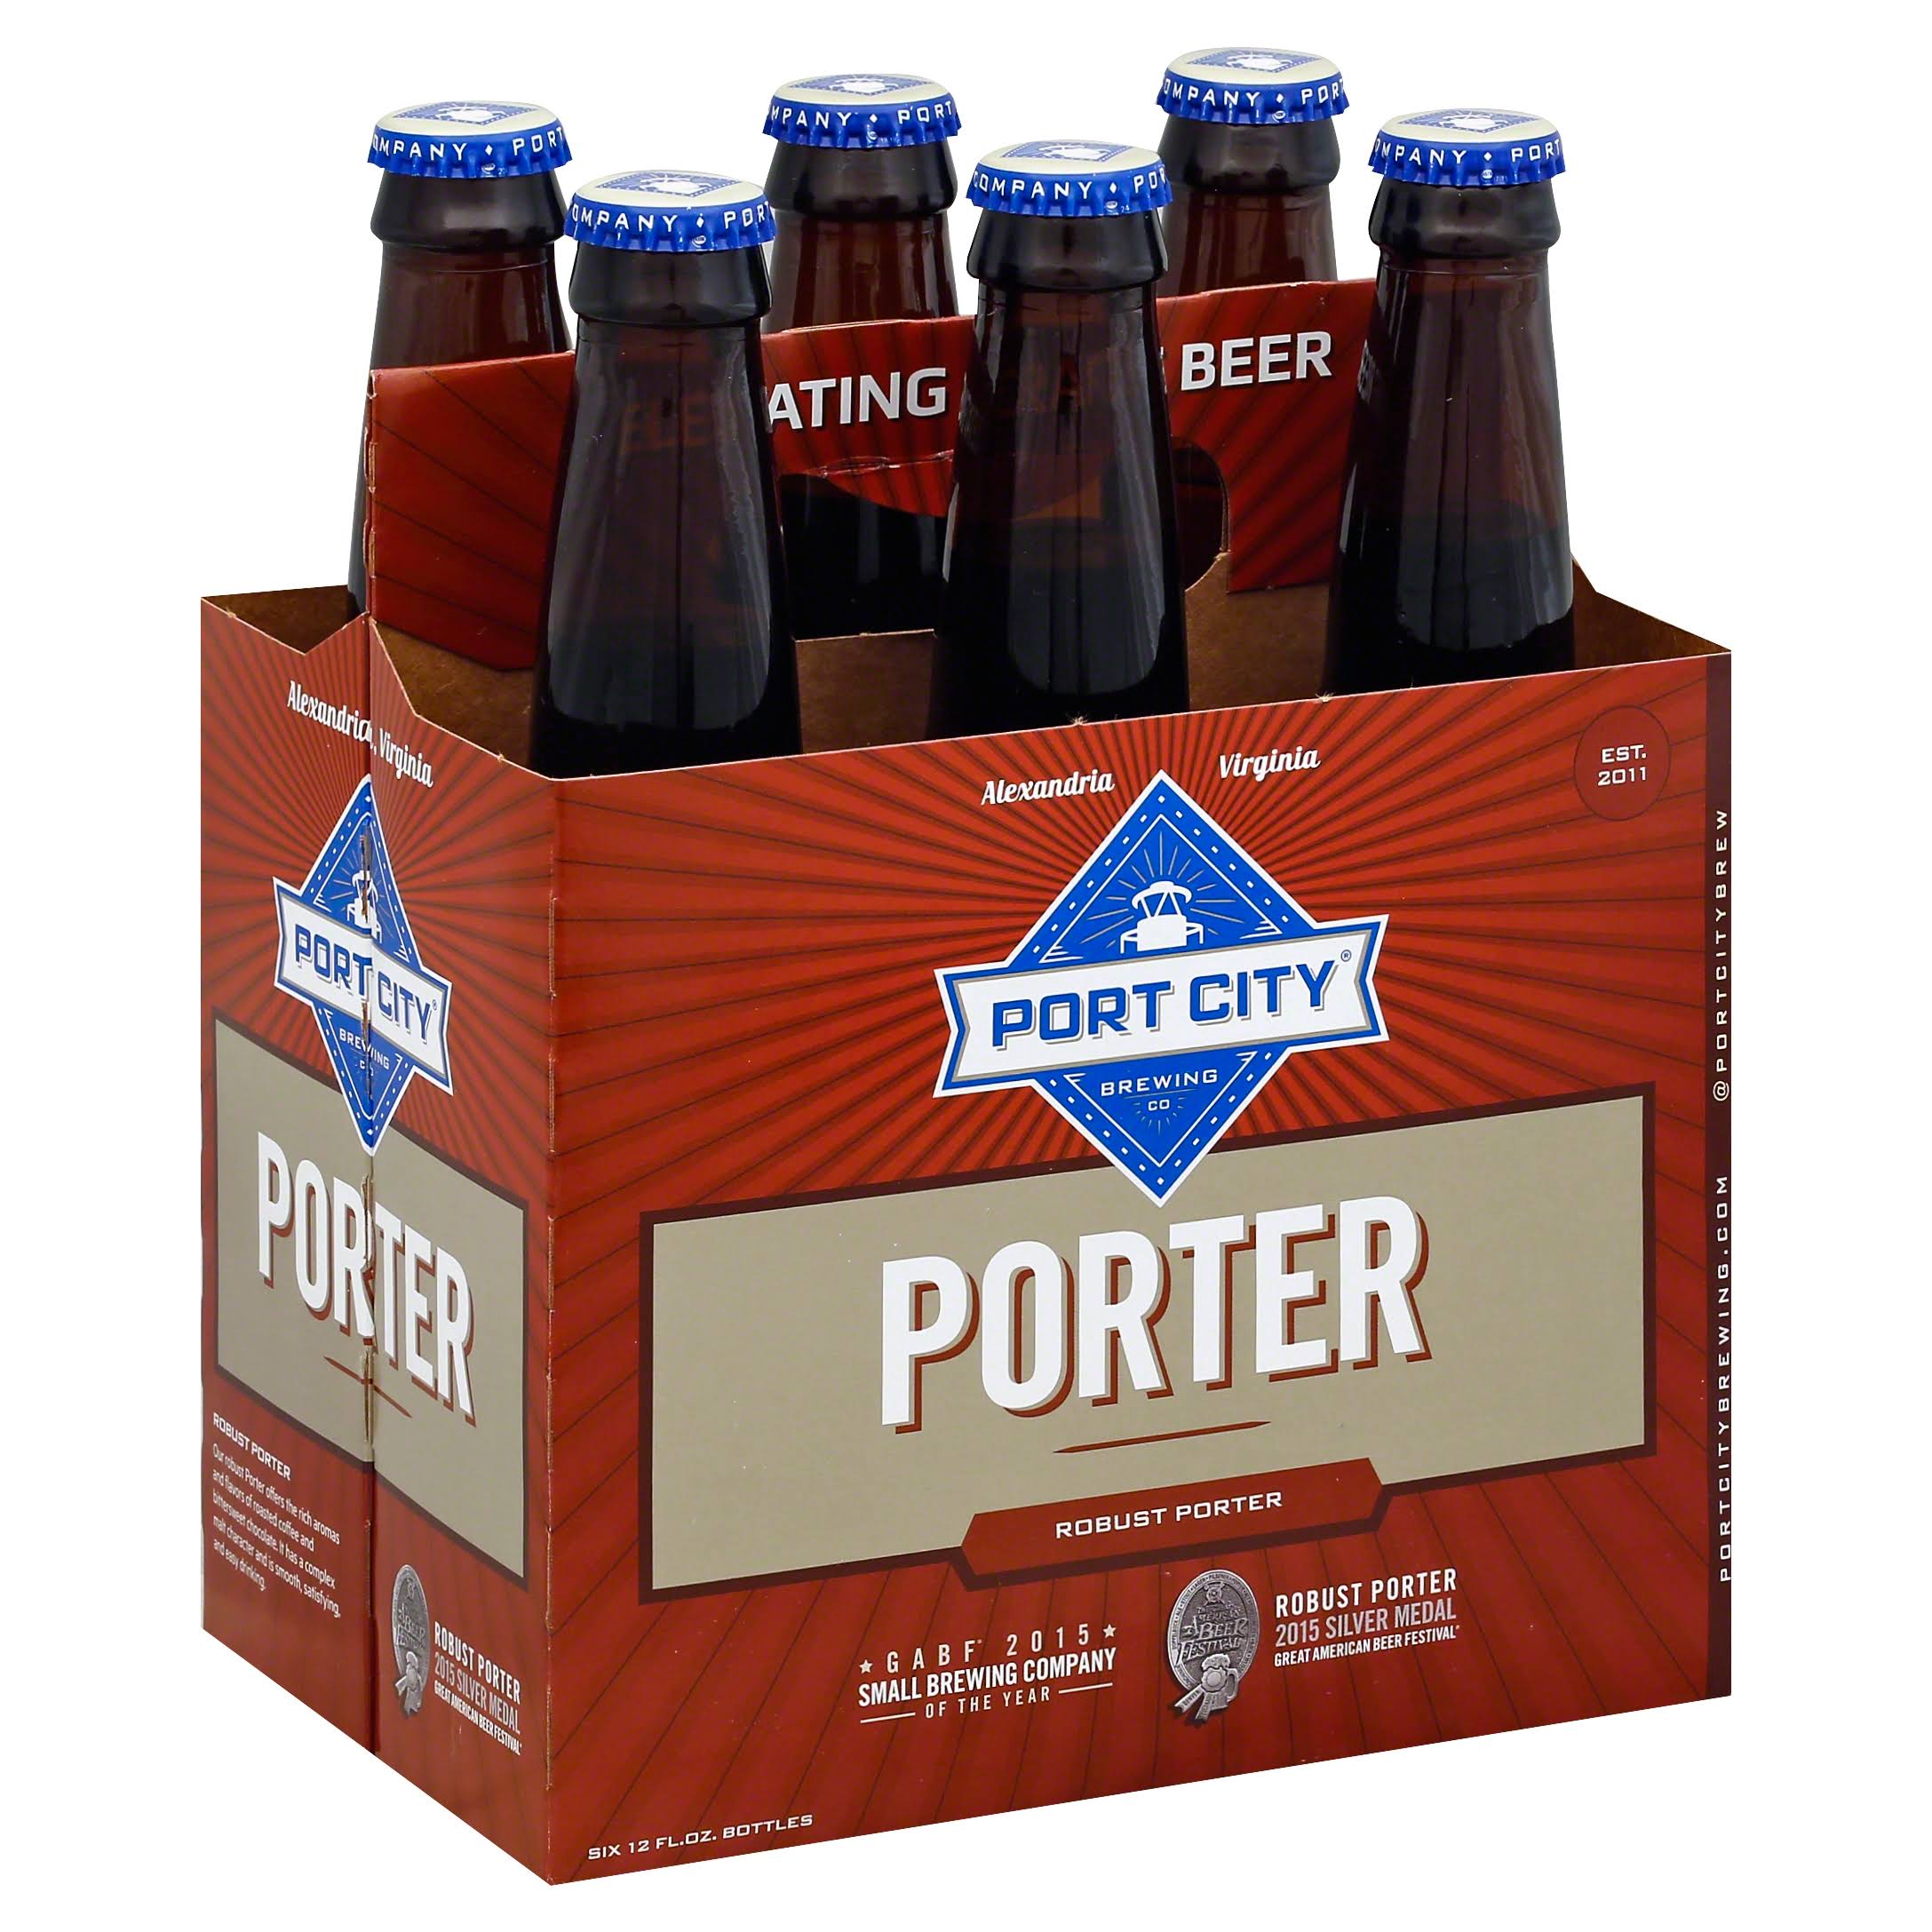 Port City Beer, Porter, Robust - 6 pack, 12 fl oz bottles